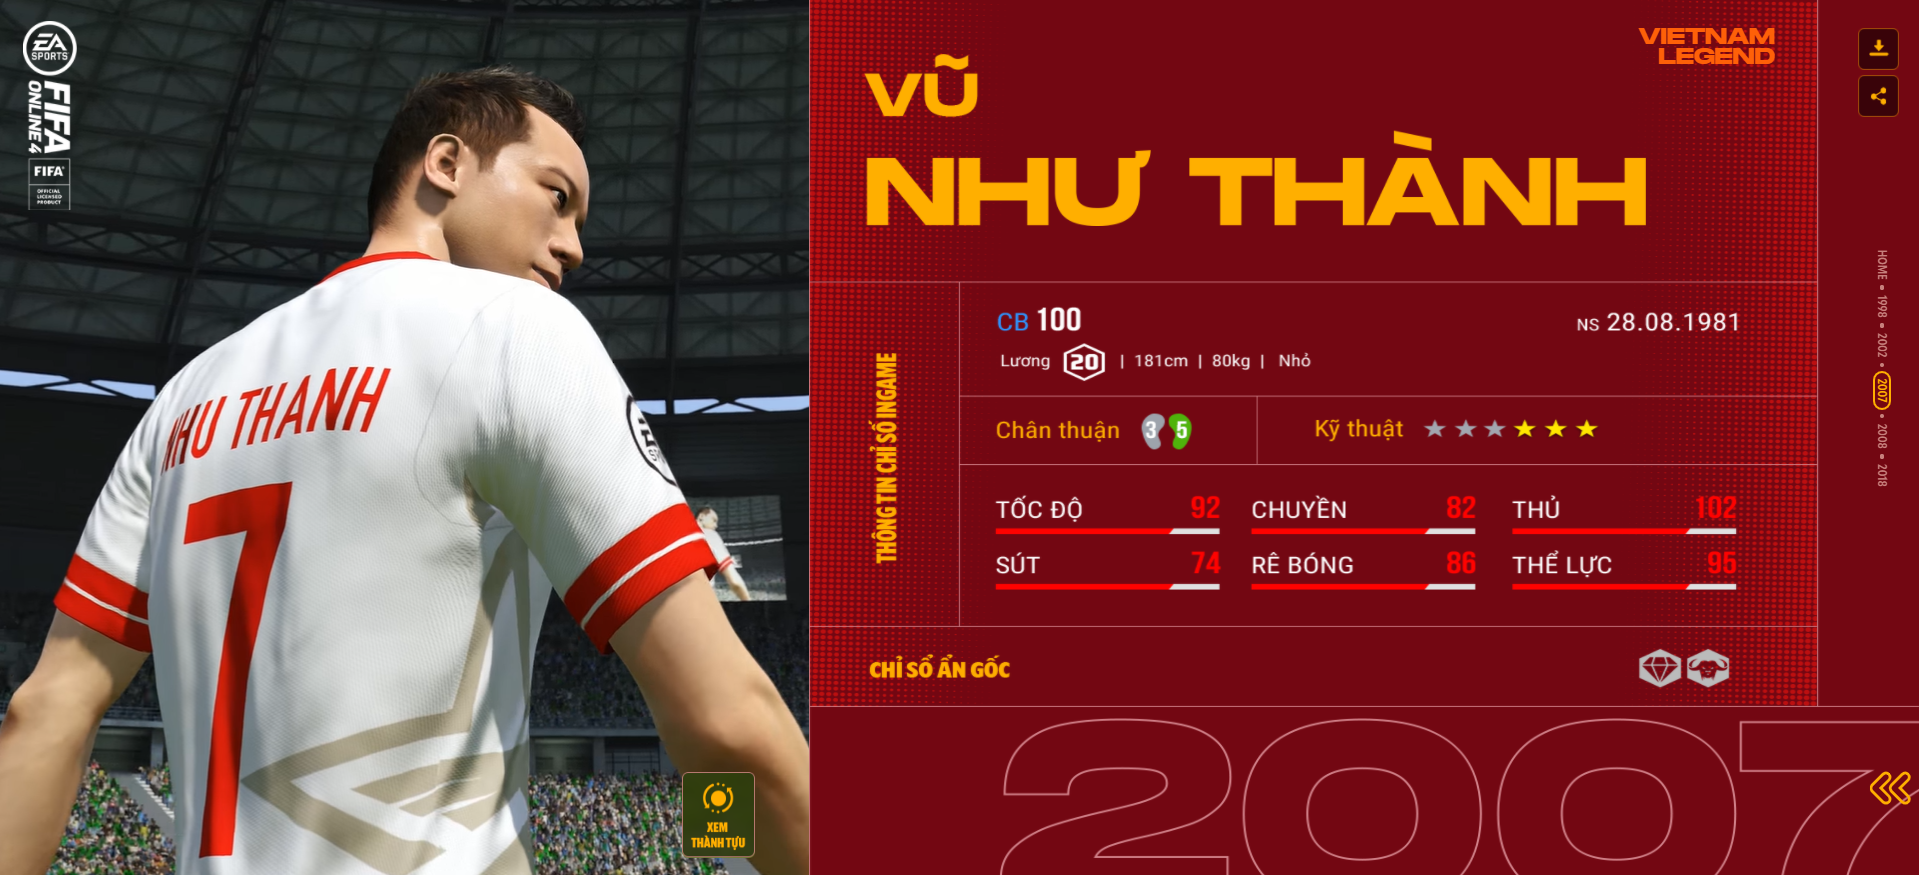 FIFA ONLINE 4 | Soi chỉ số khủng diện mạo mới của Vũ Như Thành Vietnam Legends - Trung vệ “trăm năm có một” của Bóng đá Việt Nam